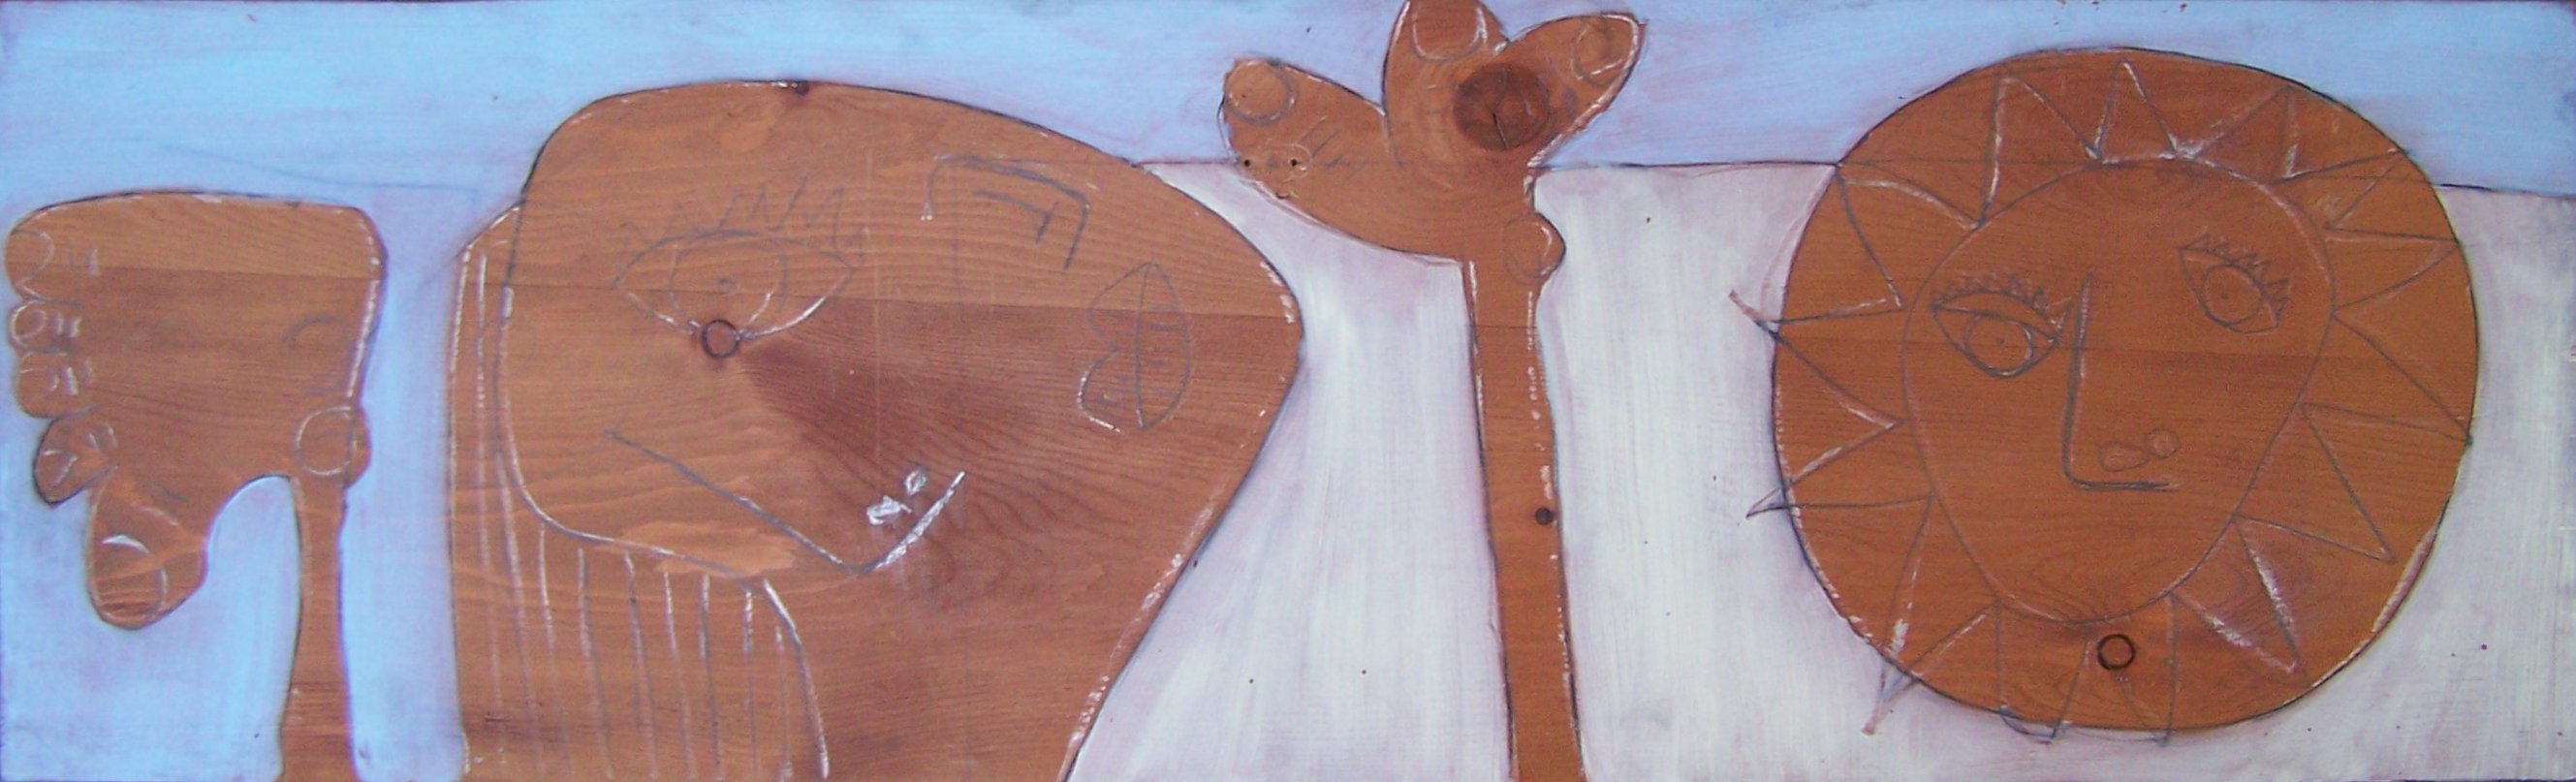 18, Mensch und Sonne, 34 x 108 cm, Gouache auf Holz, 1997